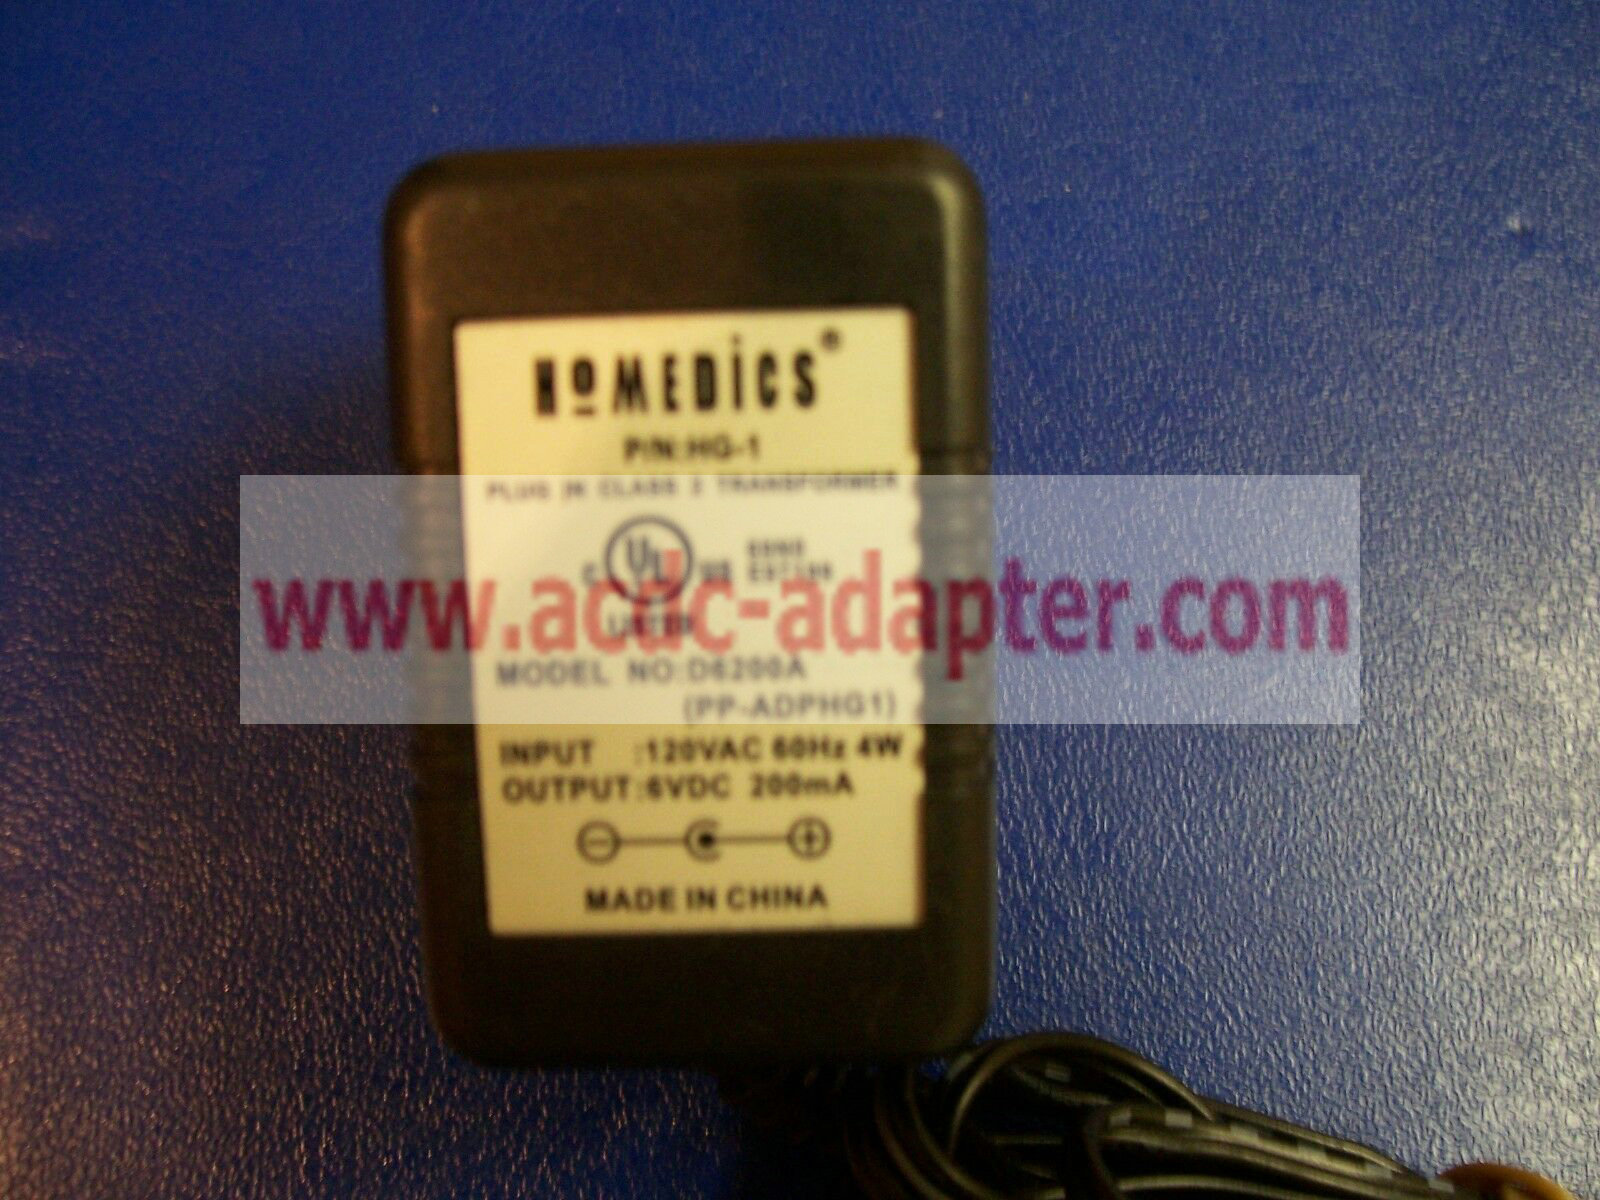 Homedics D6200A PP-ADPMG1 AC Power Adapter Class 2 Ac Power Adapter